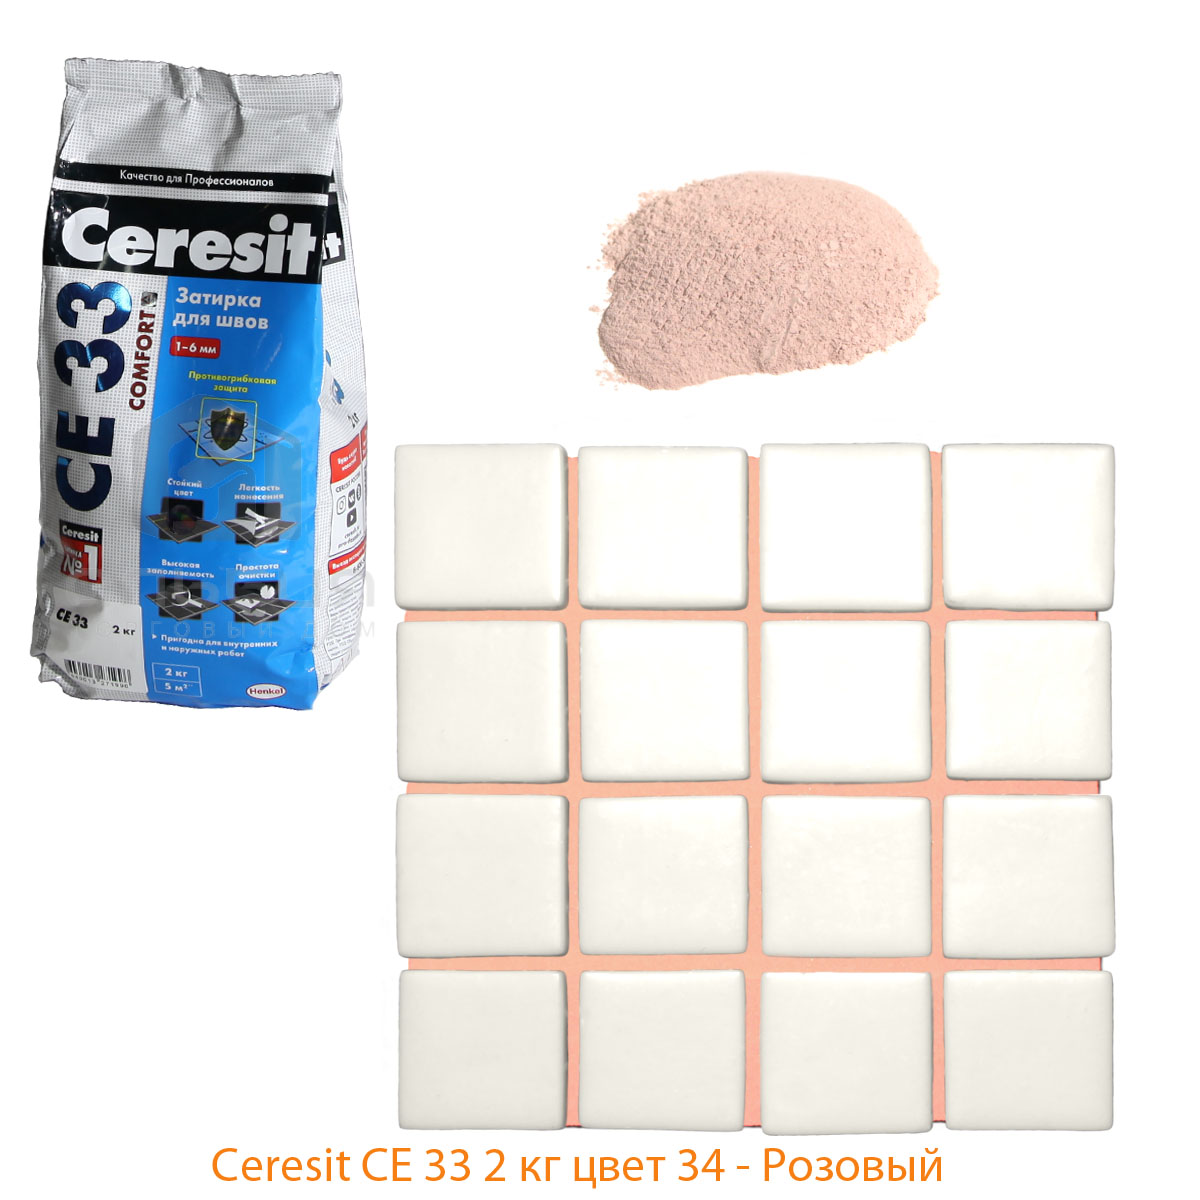 затирка для швов Ceresit CE 33 цвет 34 розовый фото цвета